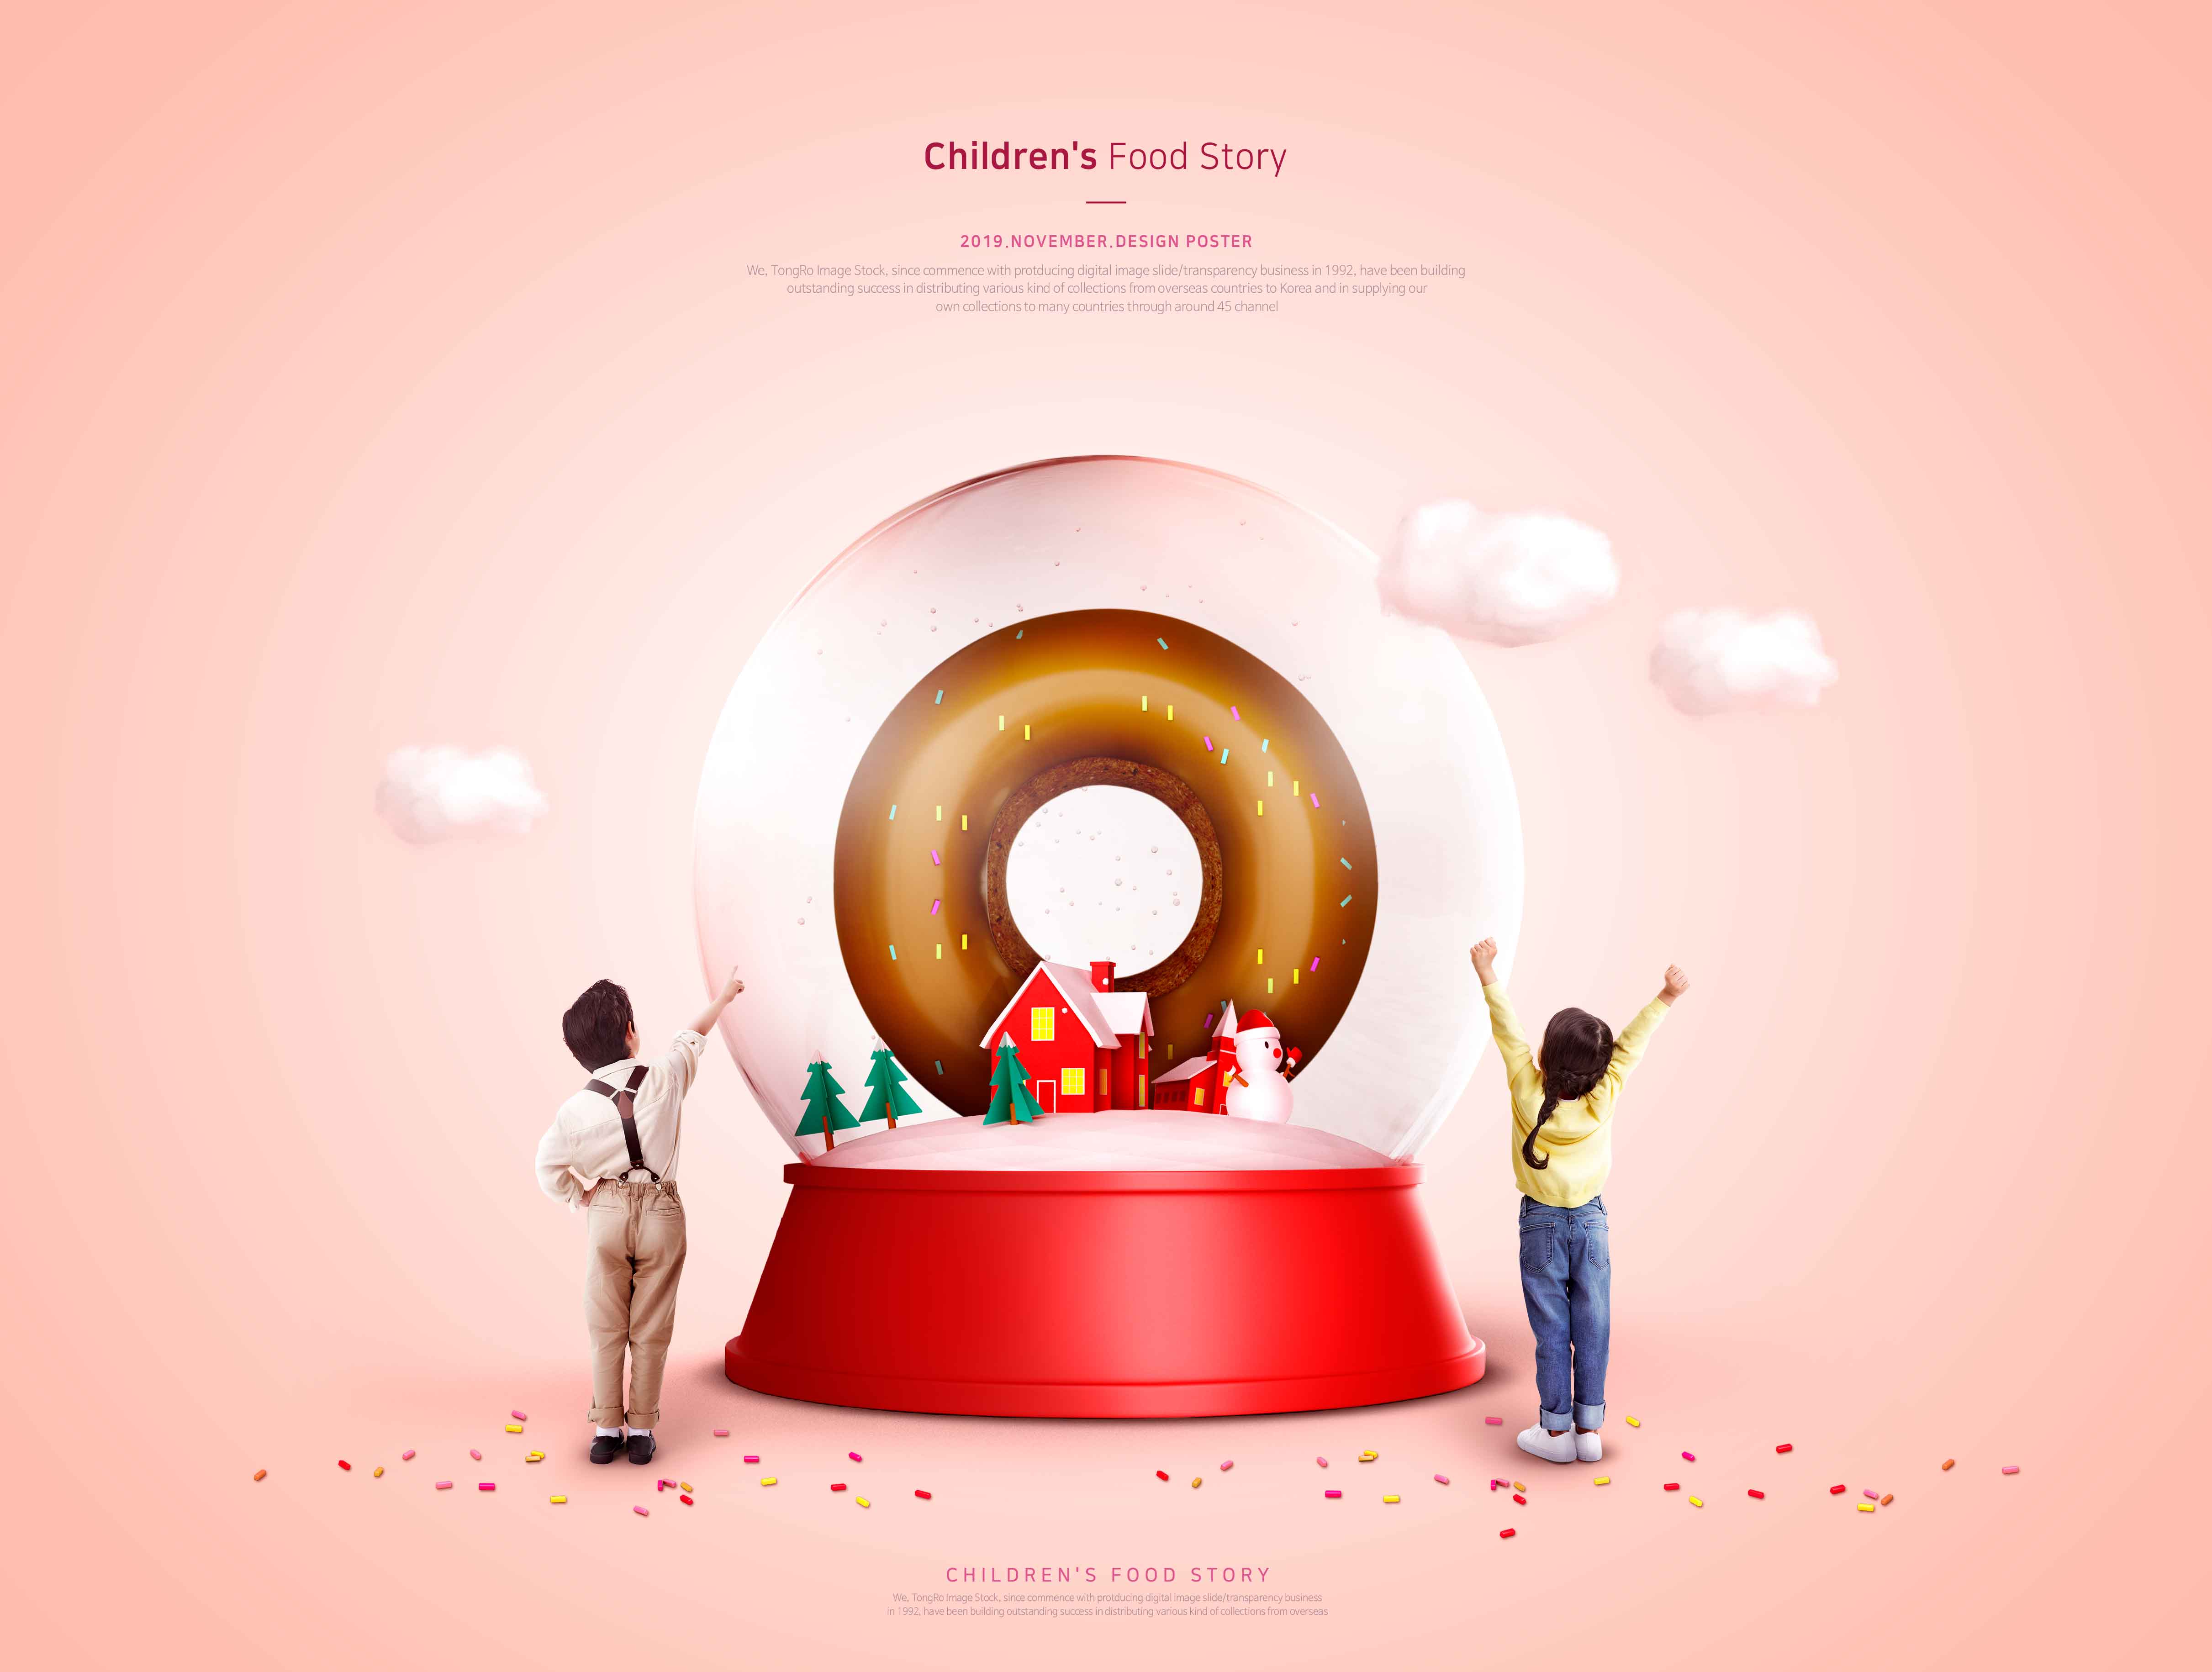 儿童食品故事甜甜圈美食推广海报PSD素材第一素材精选模板插图